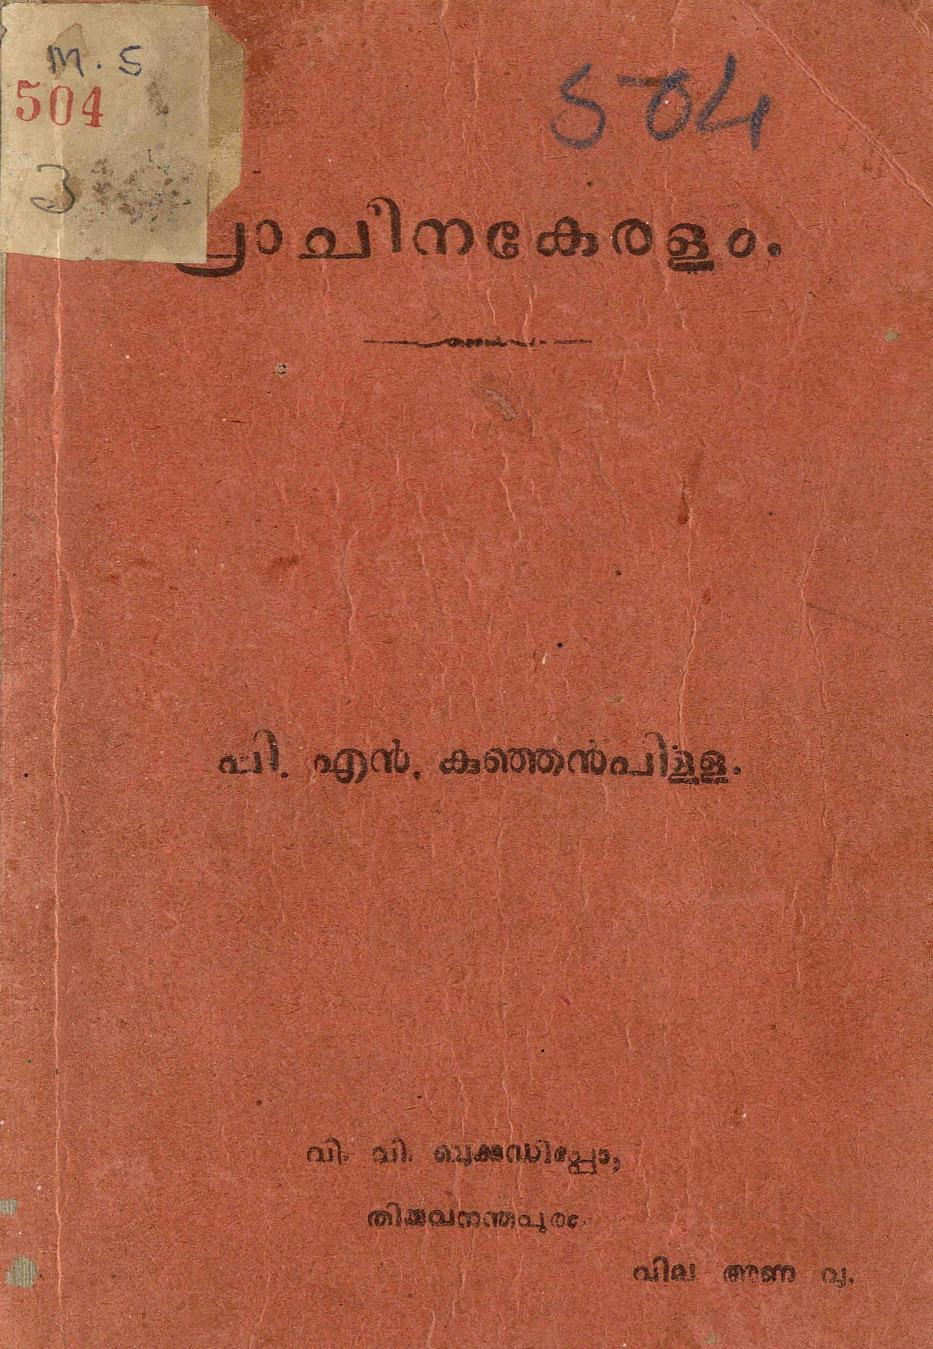  1931 - പ്രാചീനകേരളം - പി. എൻ. കുഞ്ഞൻ പിള്ള